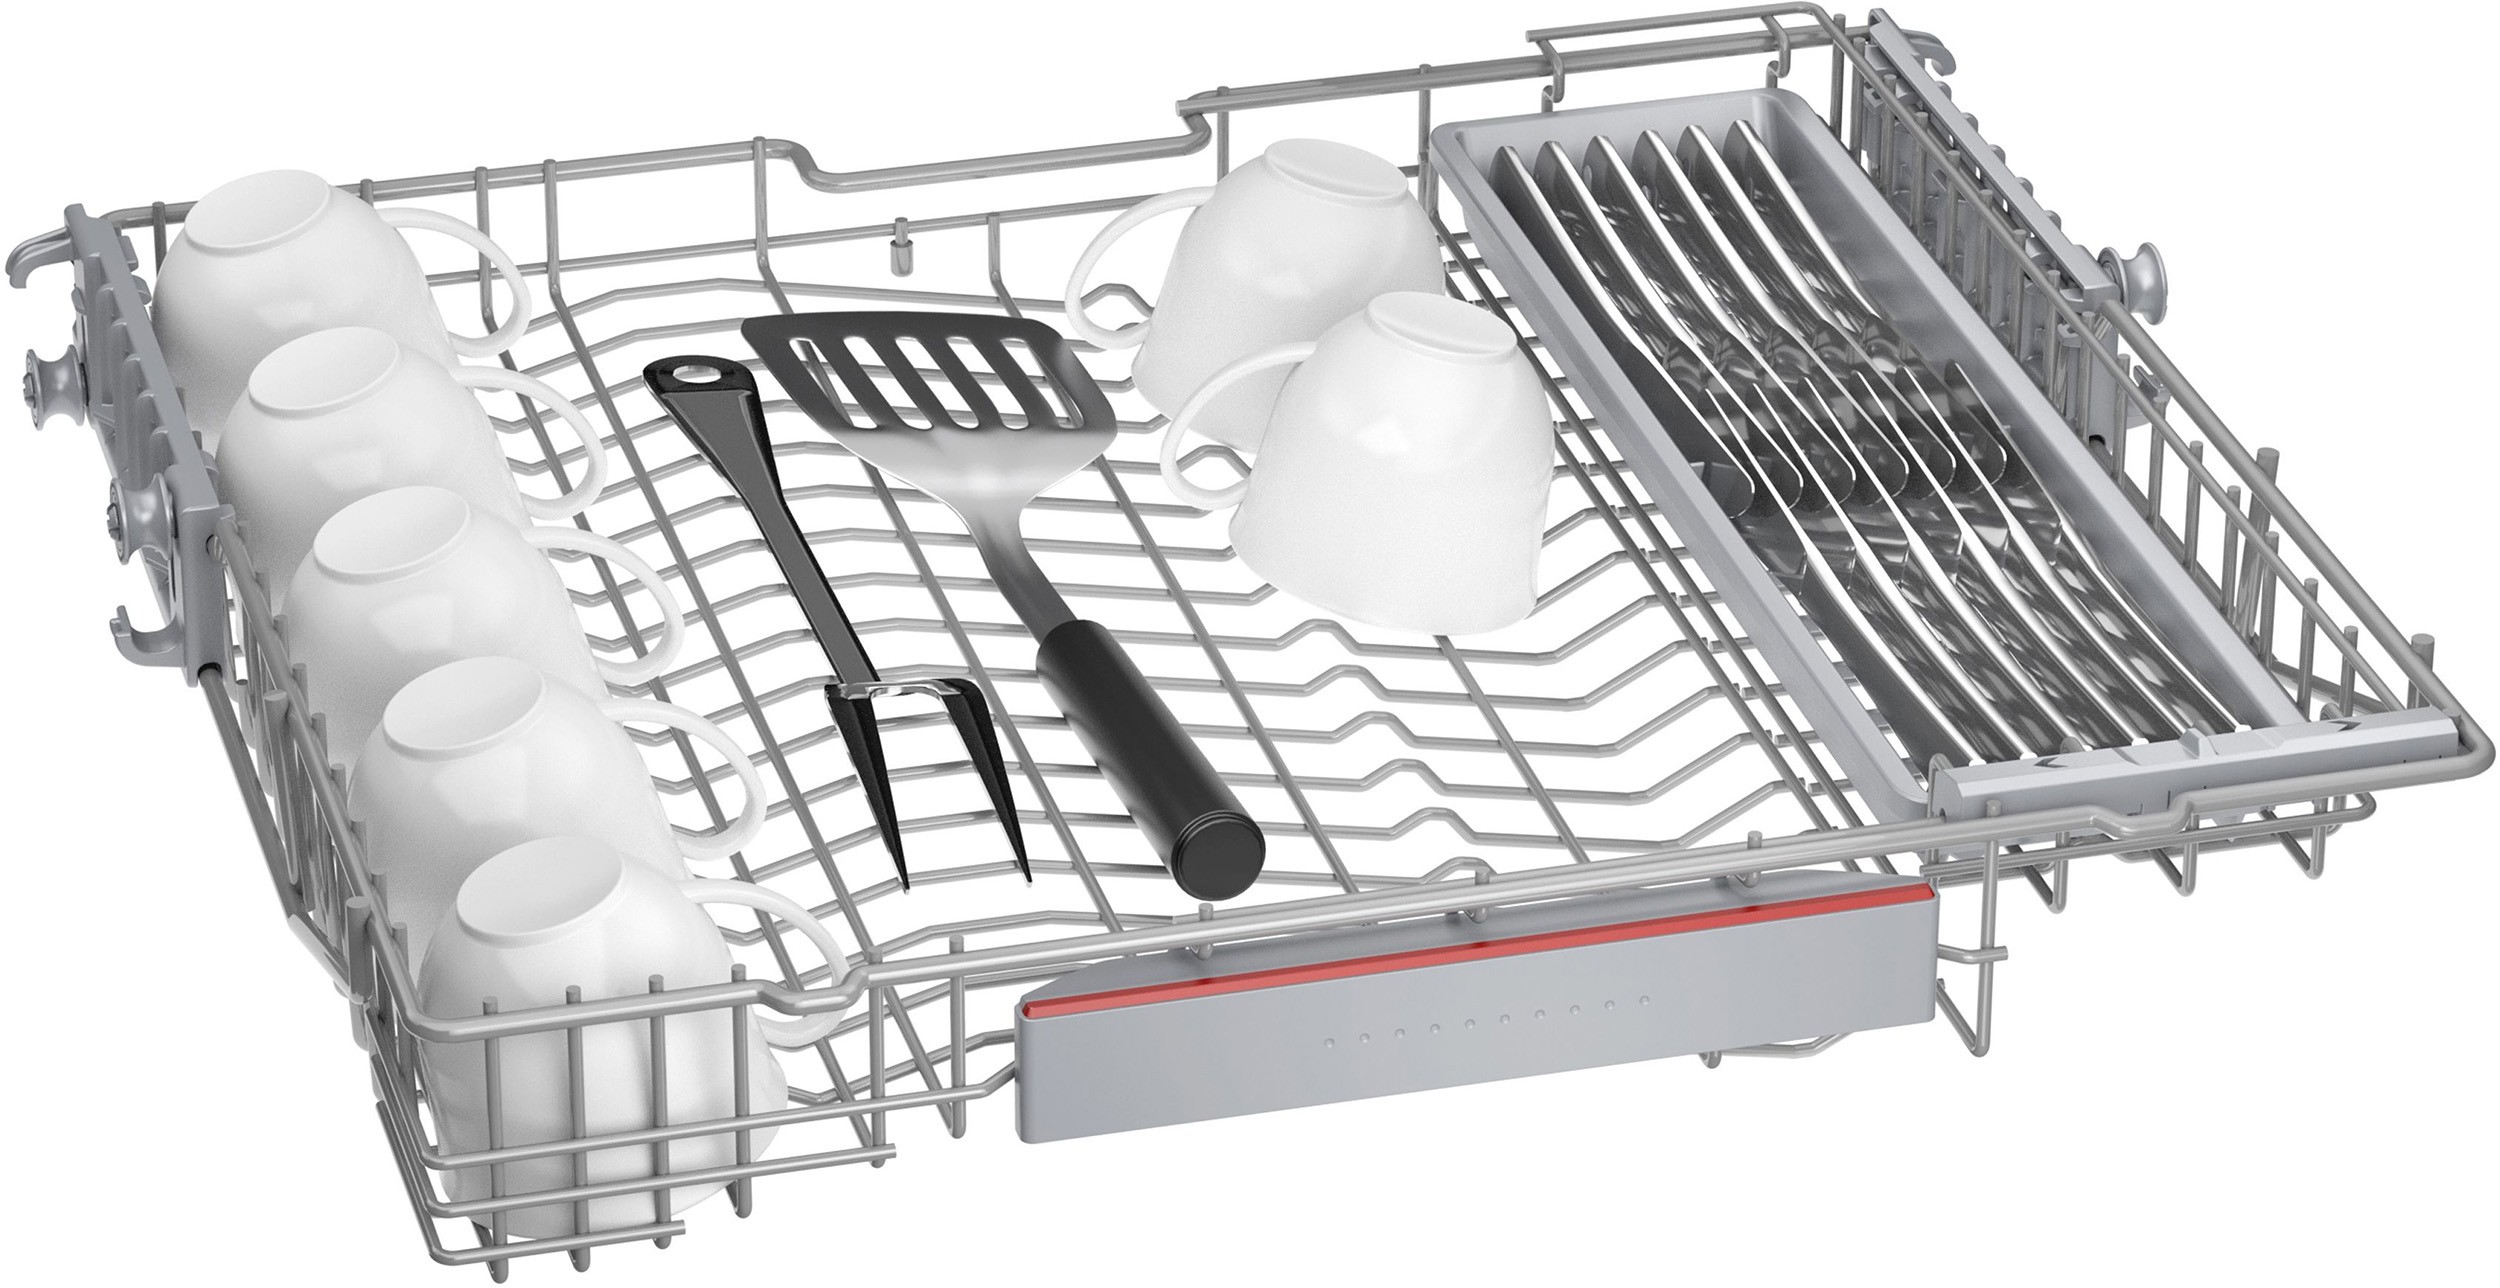 BOSCH Lave vaisselle tout integrable 60 cm  - SMV6EDX00E